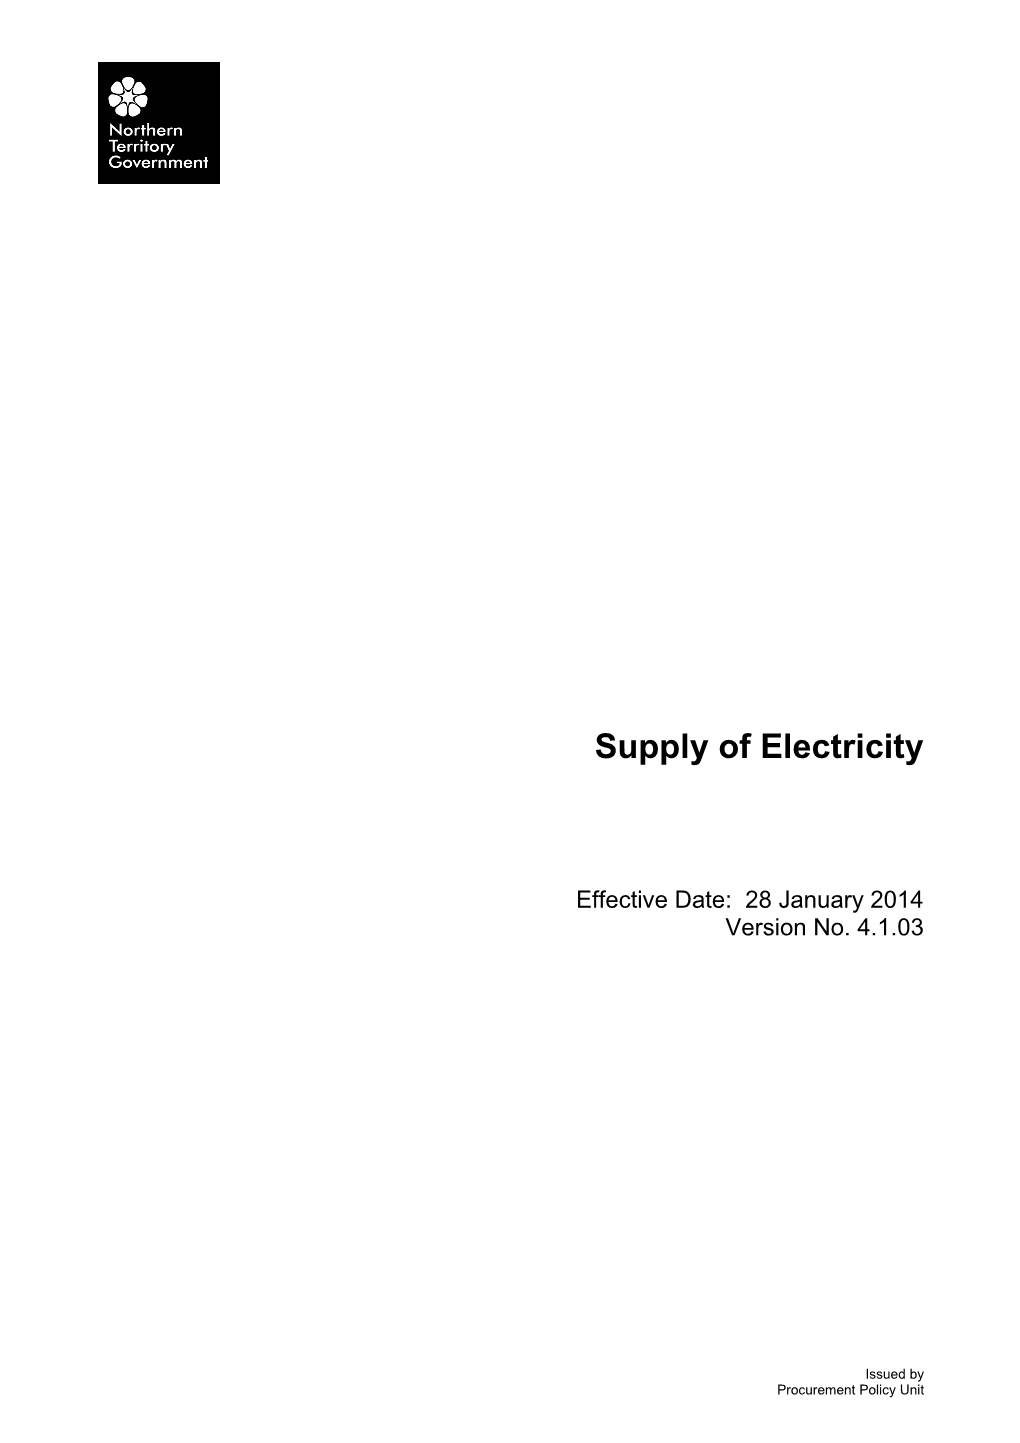 Supply of Electricity - V 4.1.03 (28 January 2014)